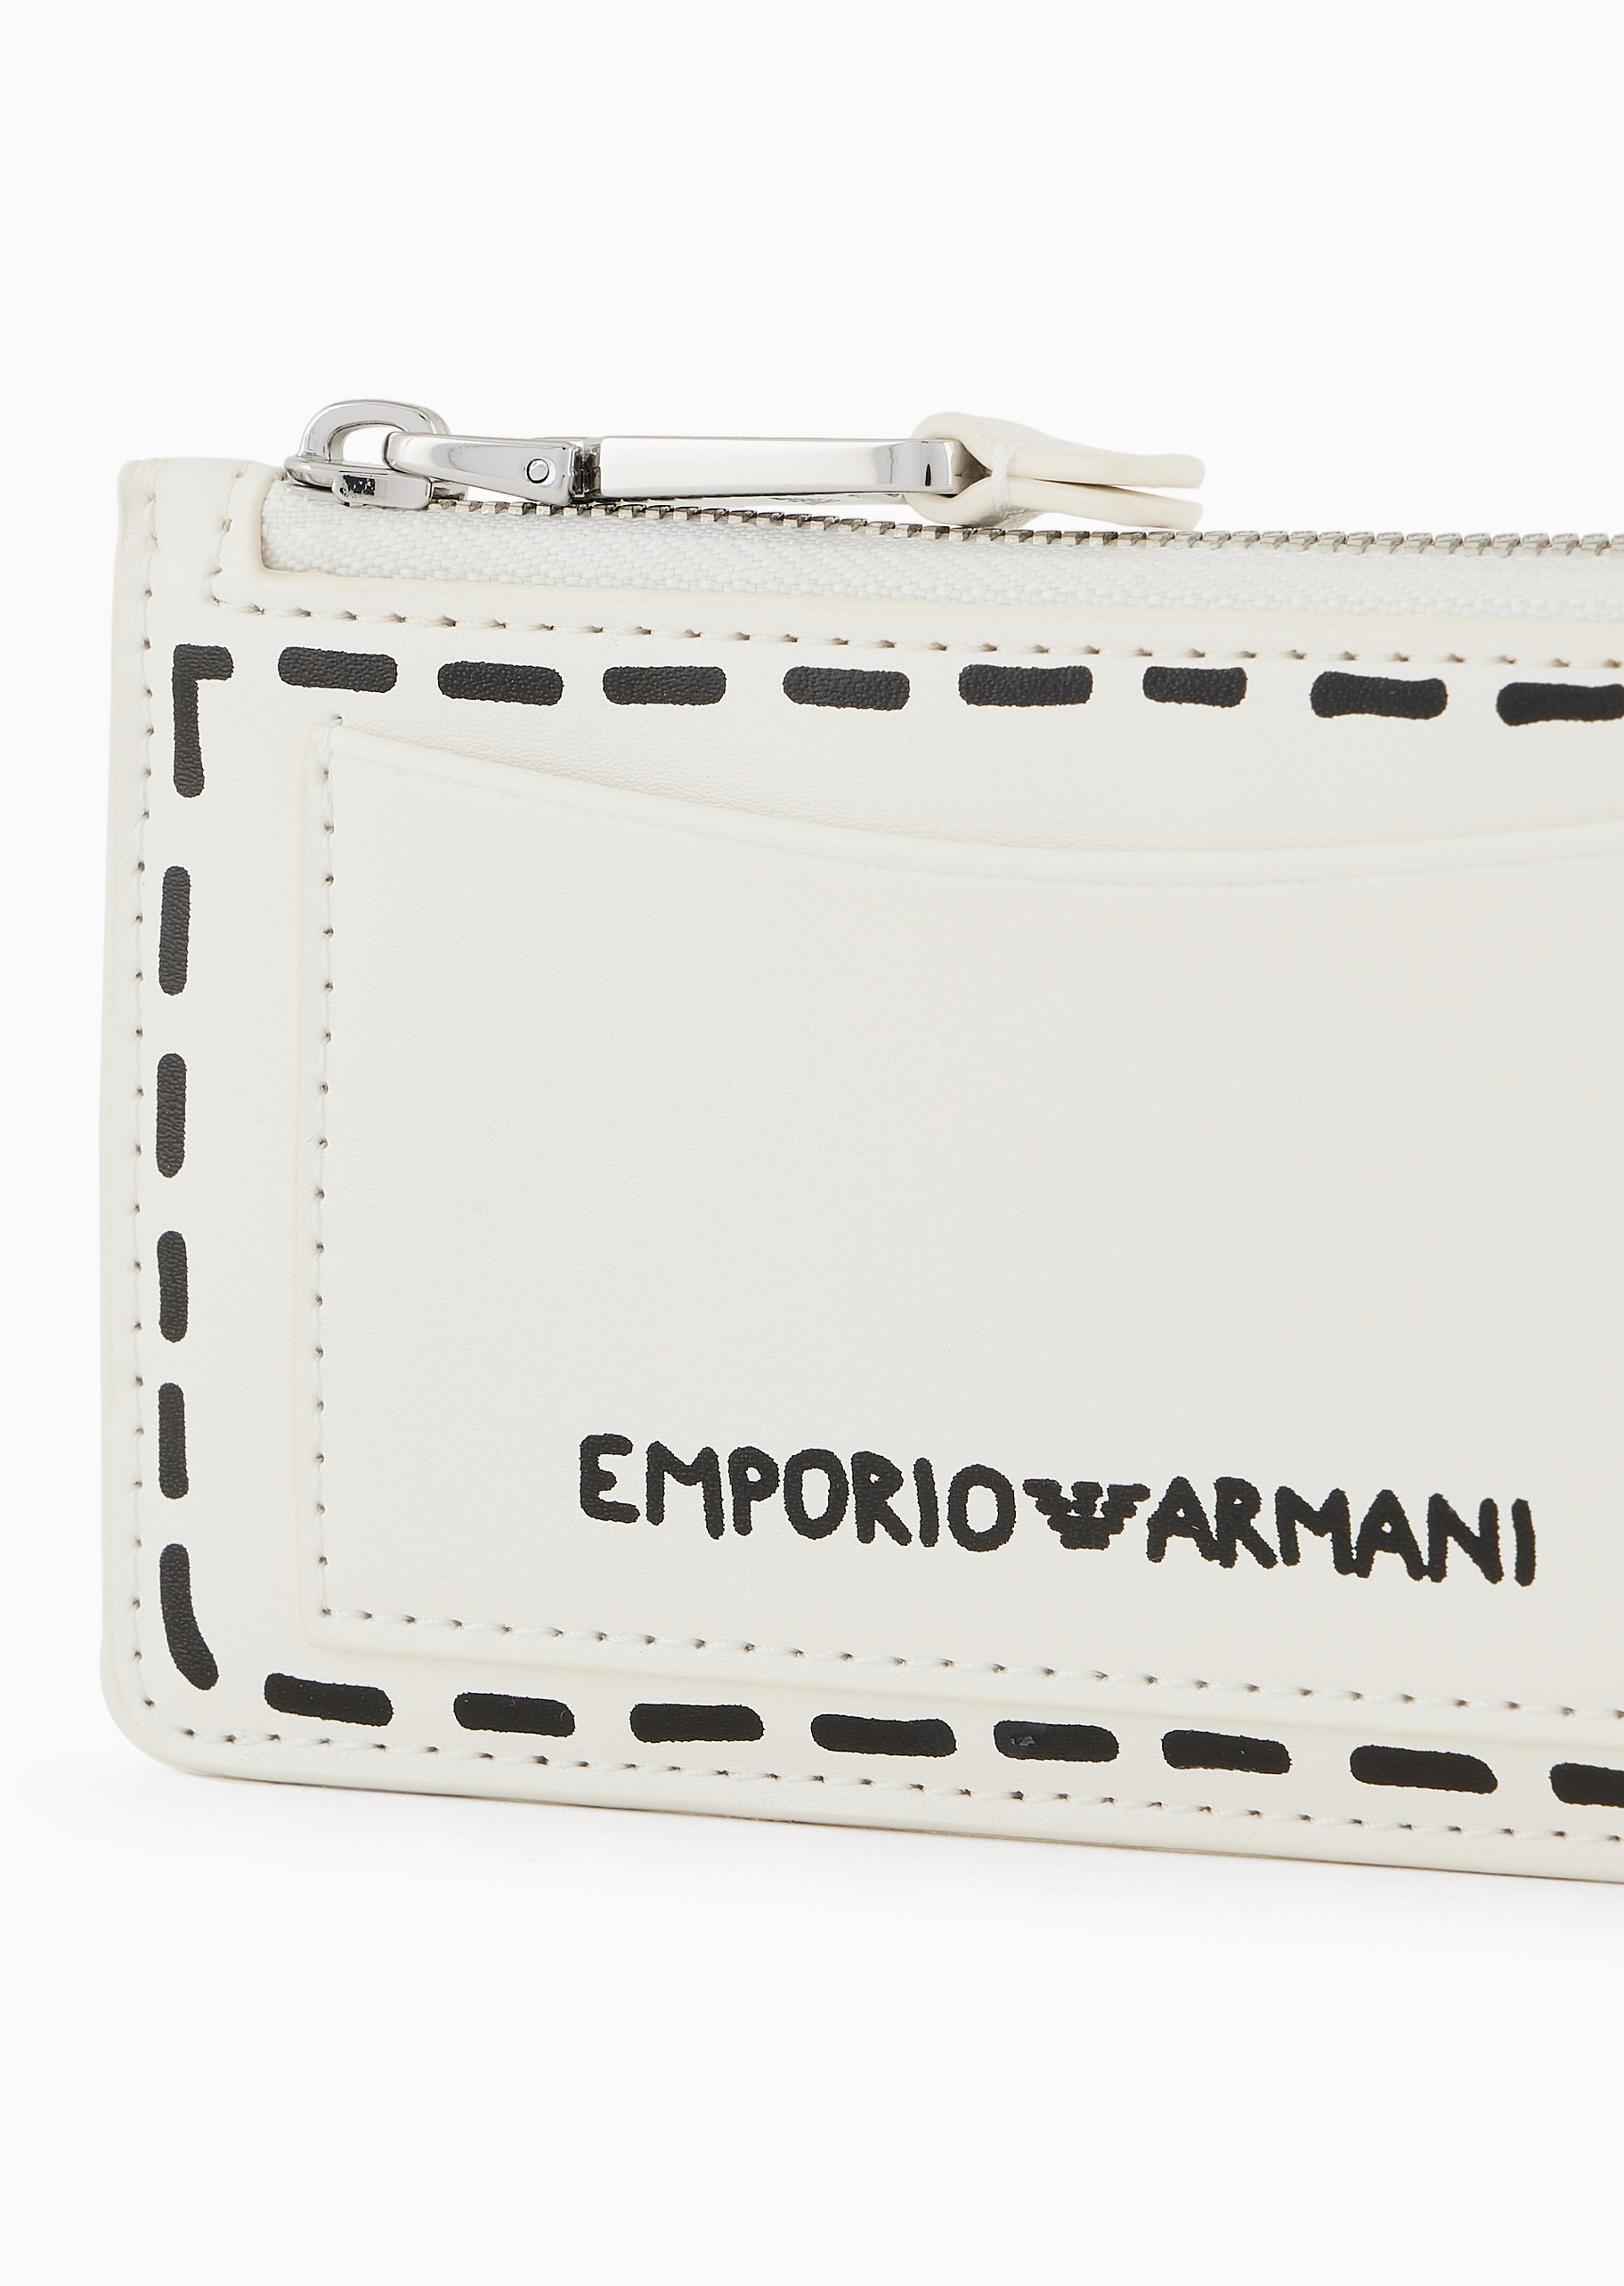 Emporio Armani 女士拉链长款时尚虚线印花手拿卡夹